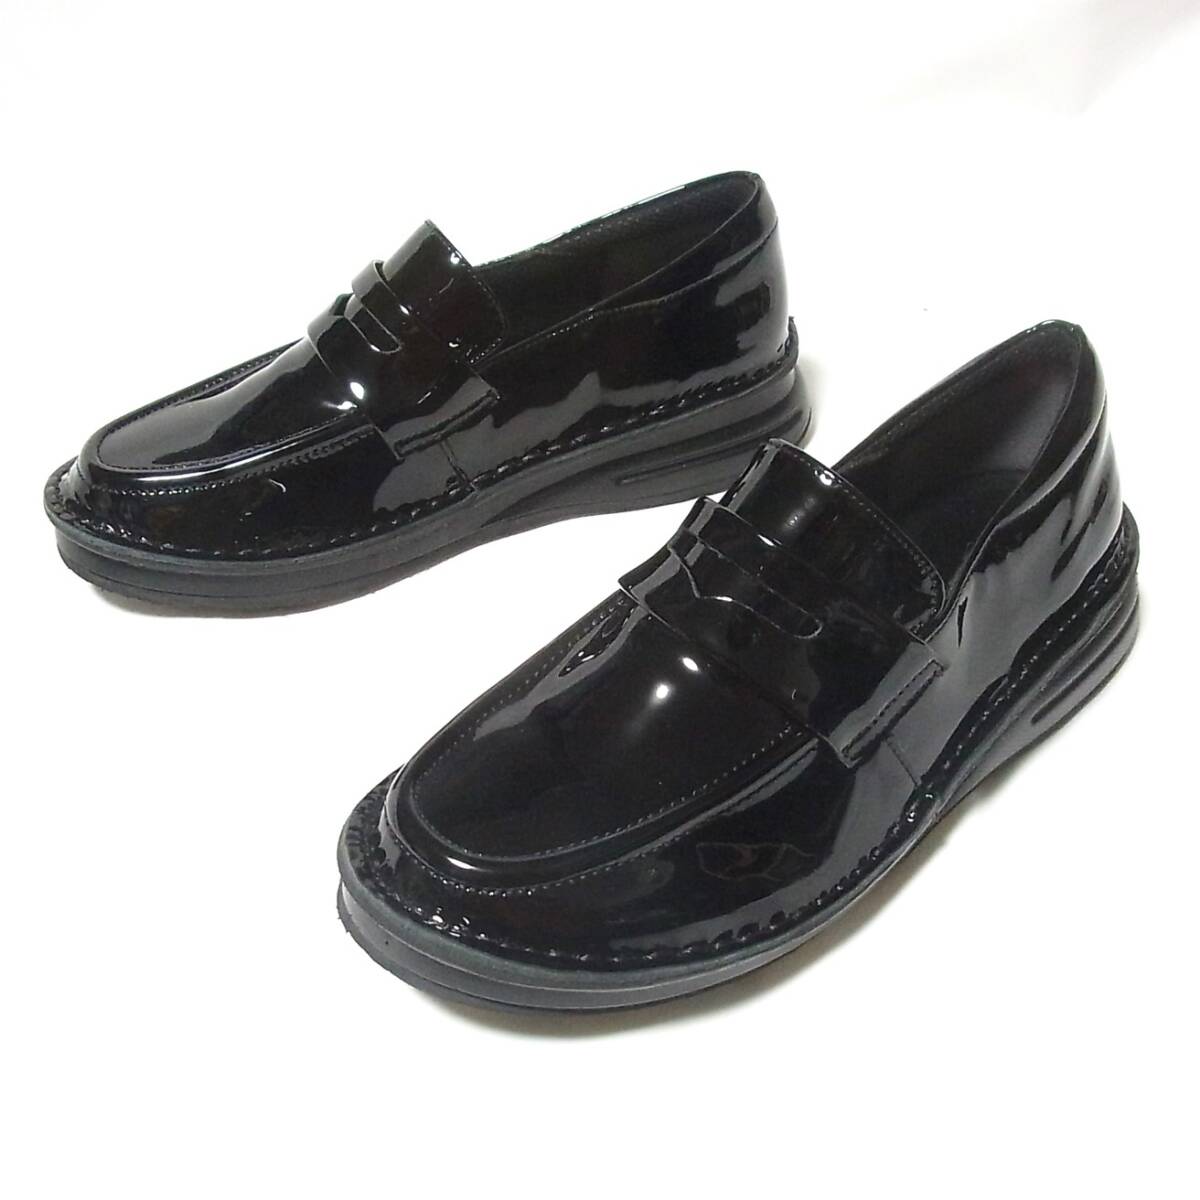  не использовался Dolce натуральный кожа сделано в Японии Loafer type Town обувь 22.5cm/ широкий 3E обычная цена 19250 иен действующий товар *Doruche чёрный кожа мягкость * спортивные туфли 